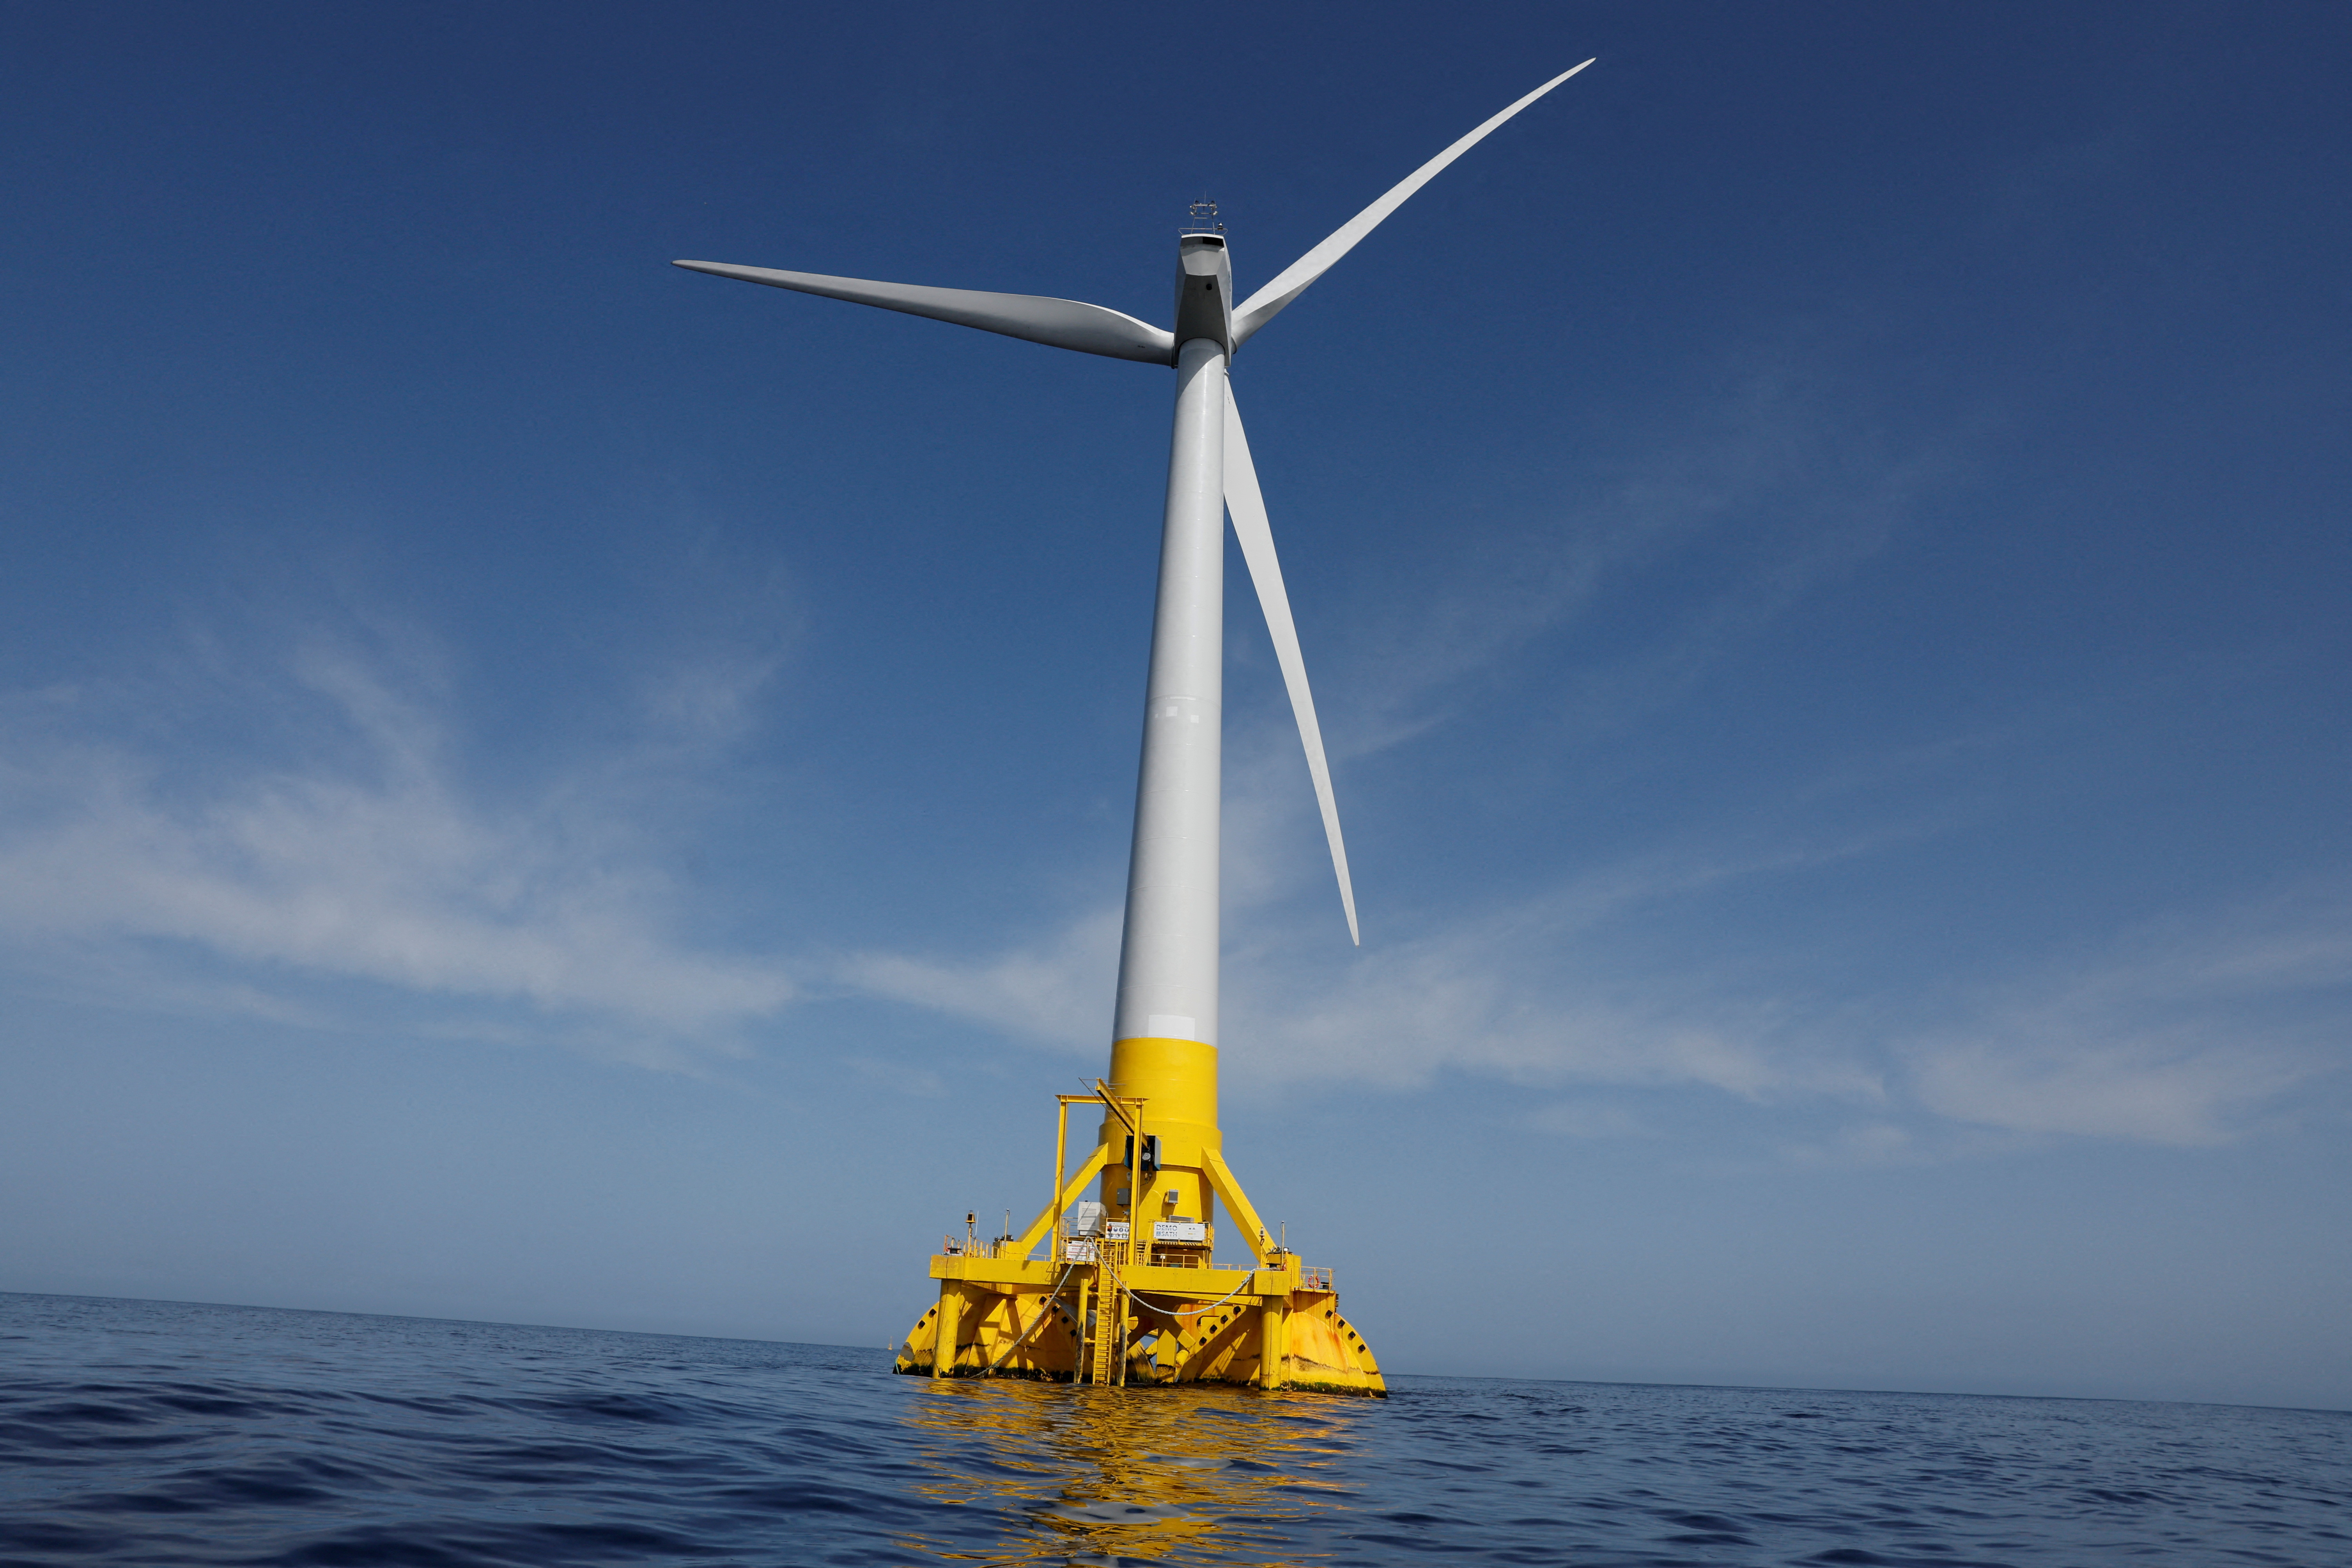 欧盟将调查输往欧洲的中国大陆风力发电机供应商获得补贴的情况。路透